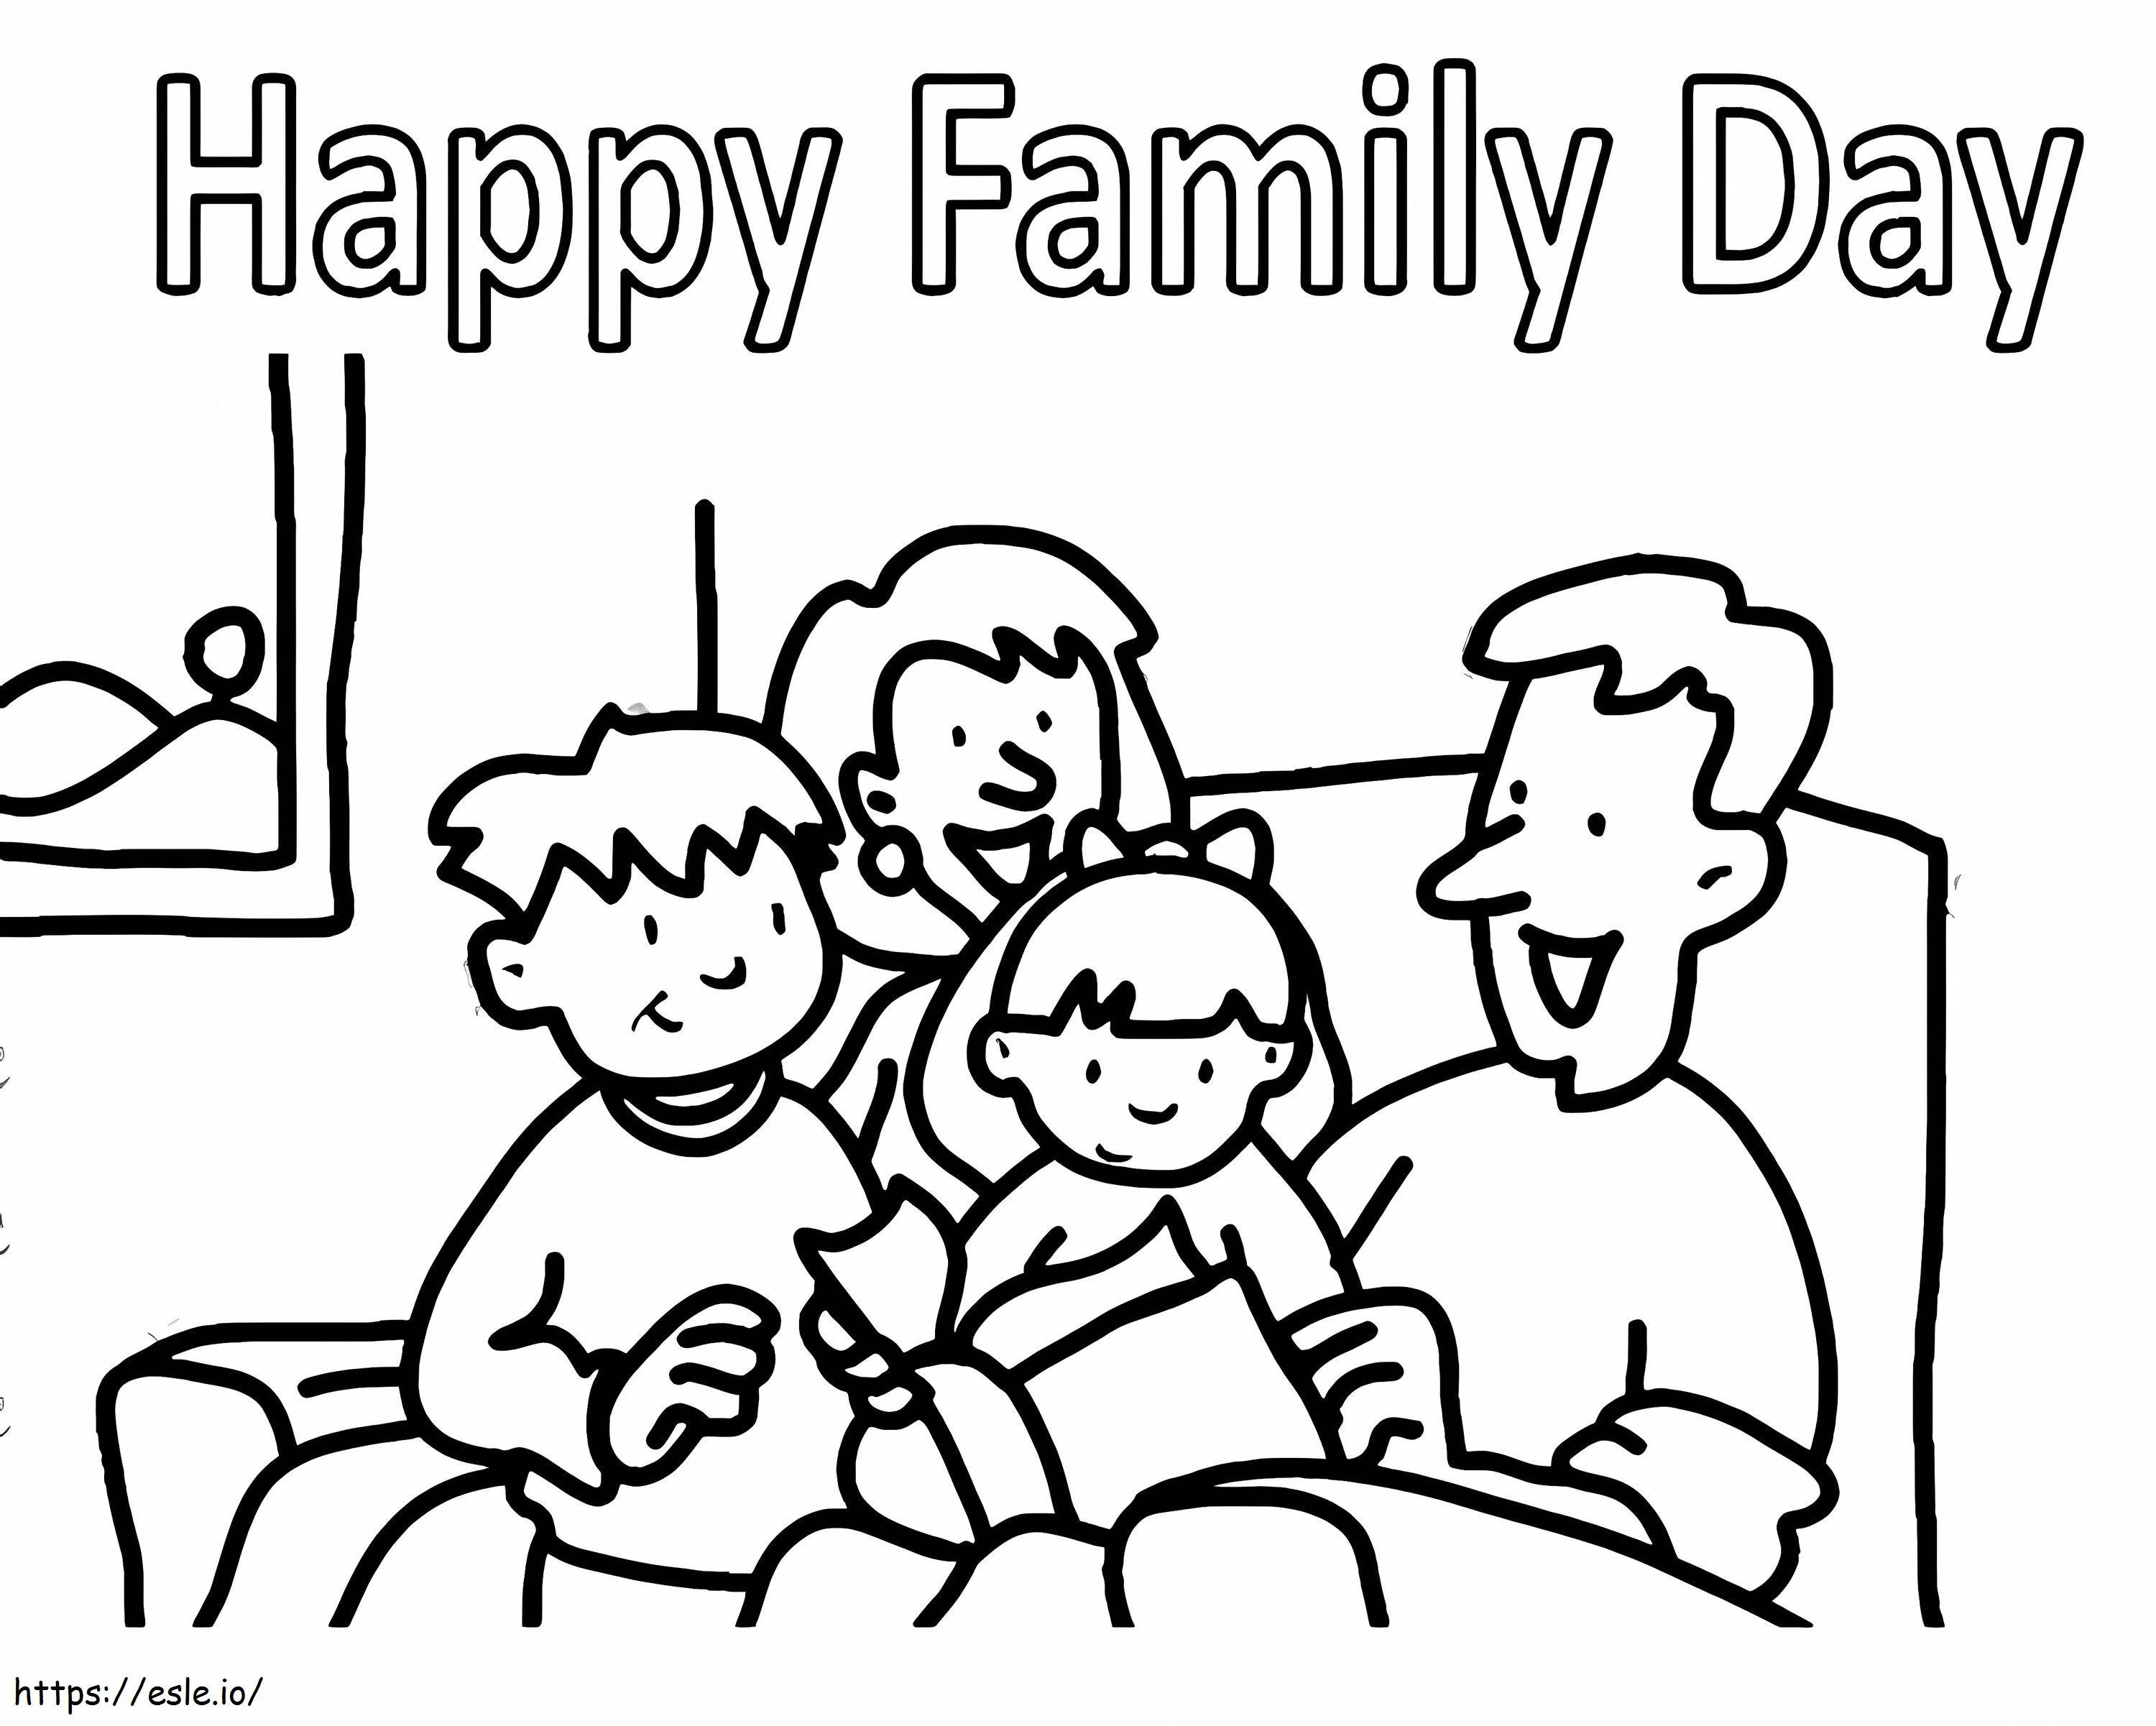 Szczęśliwego Dnia Rodziny kolorowanka